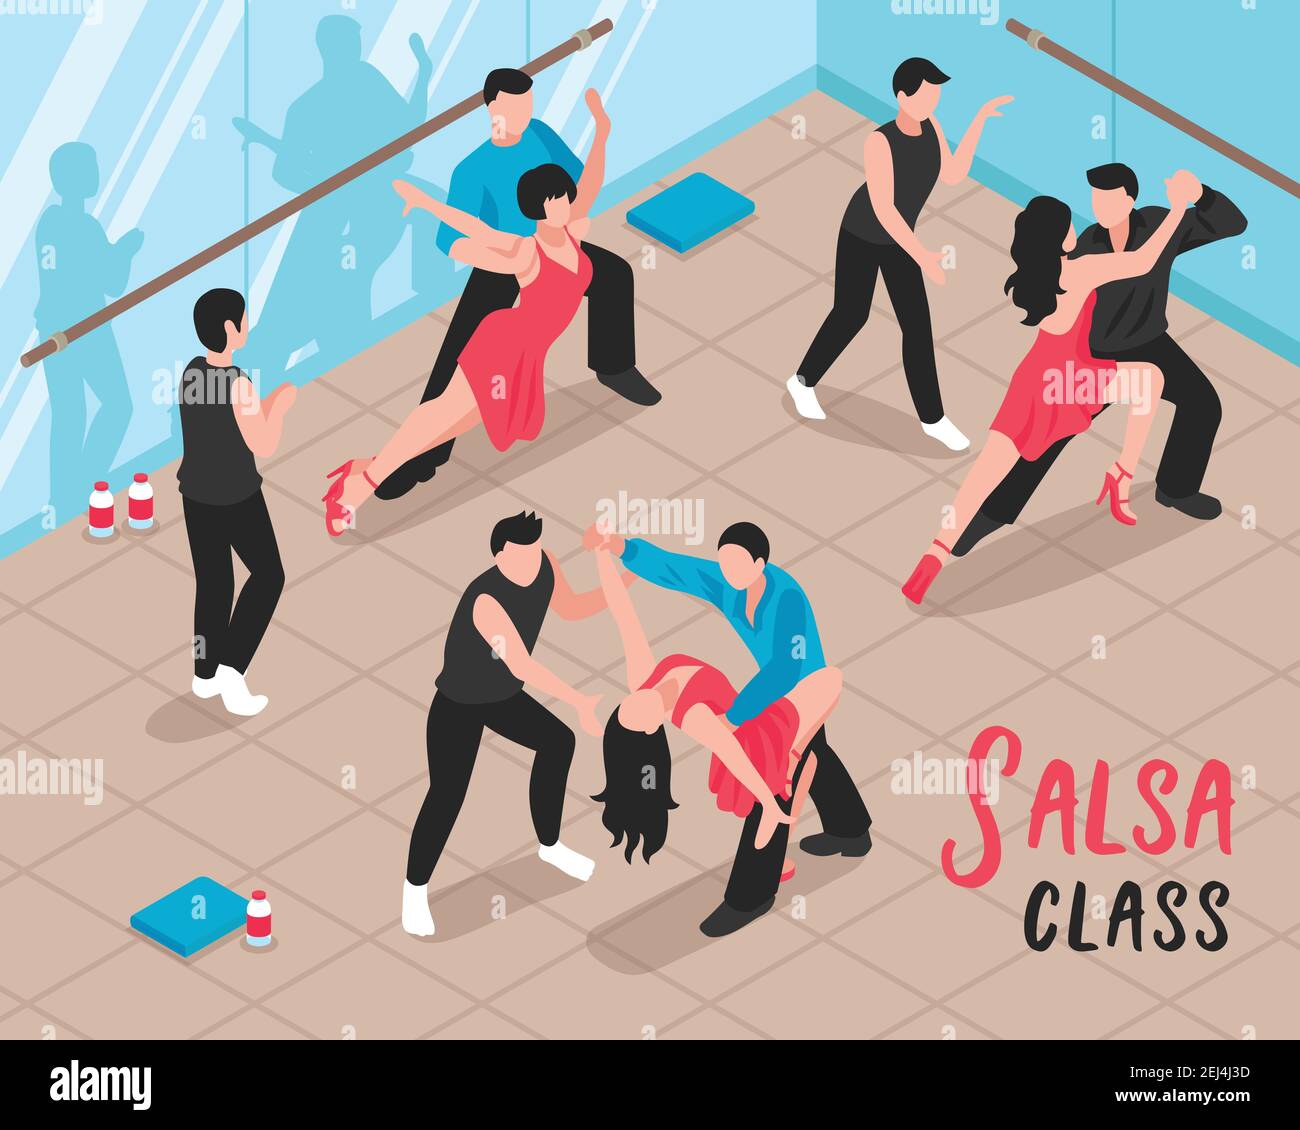 Salsa-Klassenszene mit Menschen während des Tanztrainings im Ballsaal Mit Glaswänden isometrische Vektorgrafik Stock Vektor